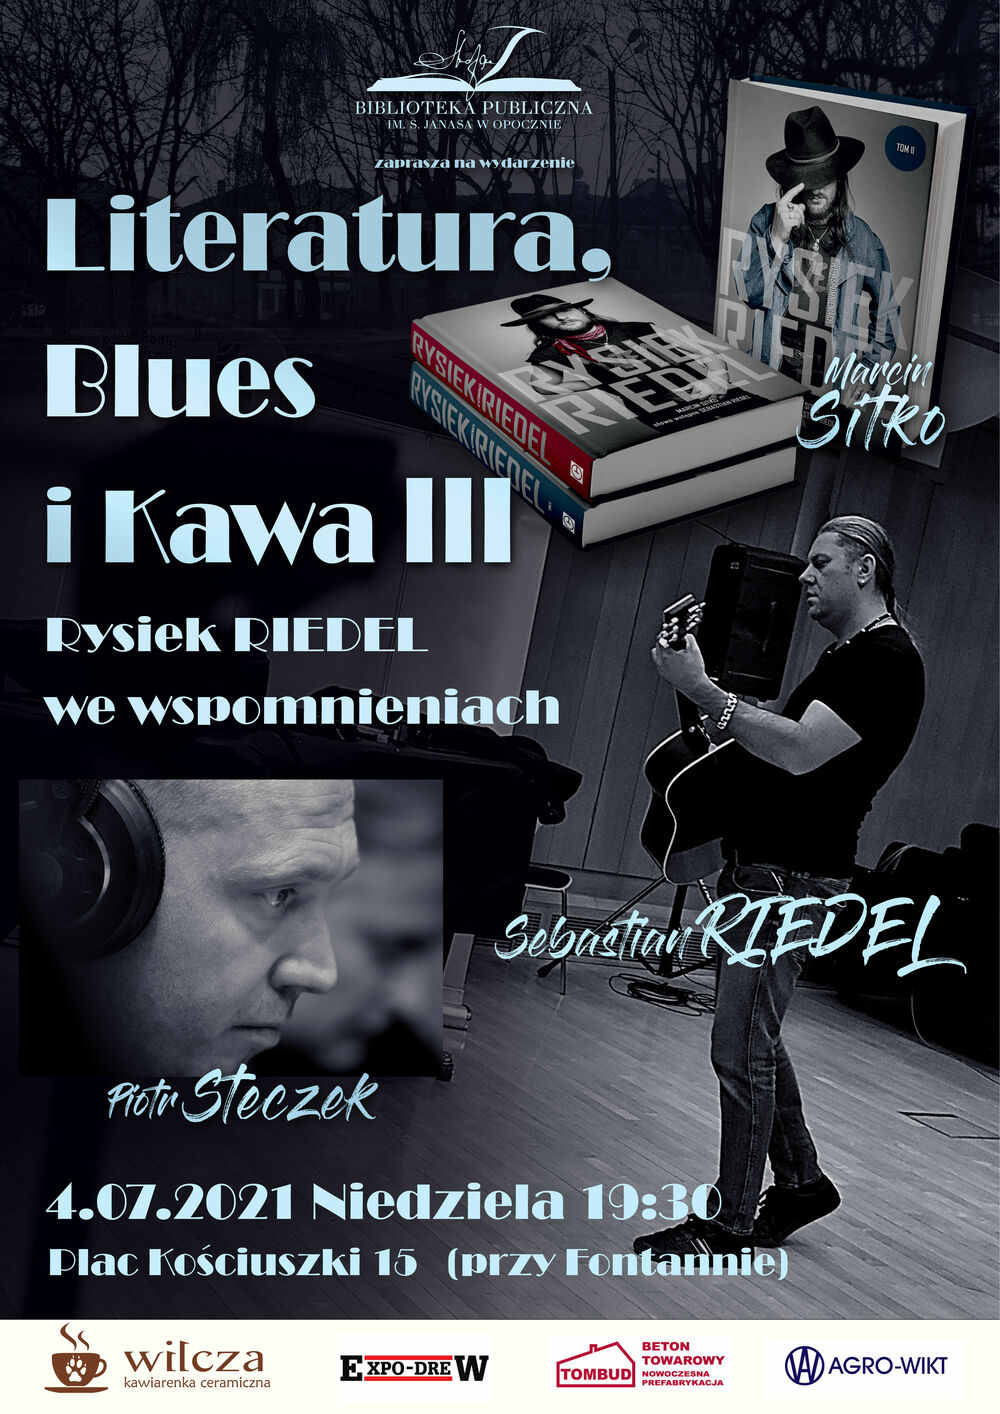  "Literatura, Blues i Kawa III"